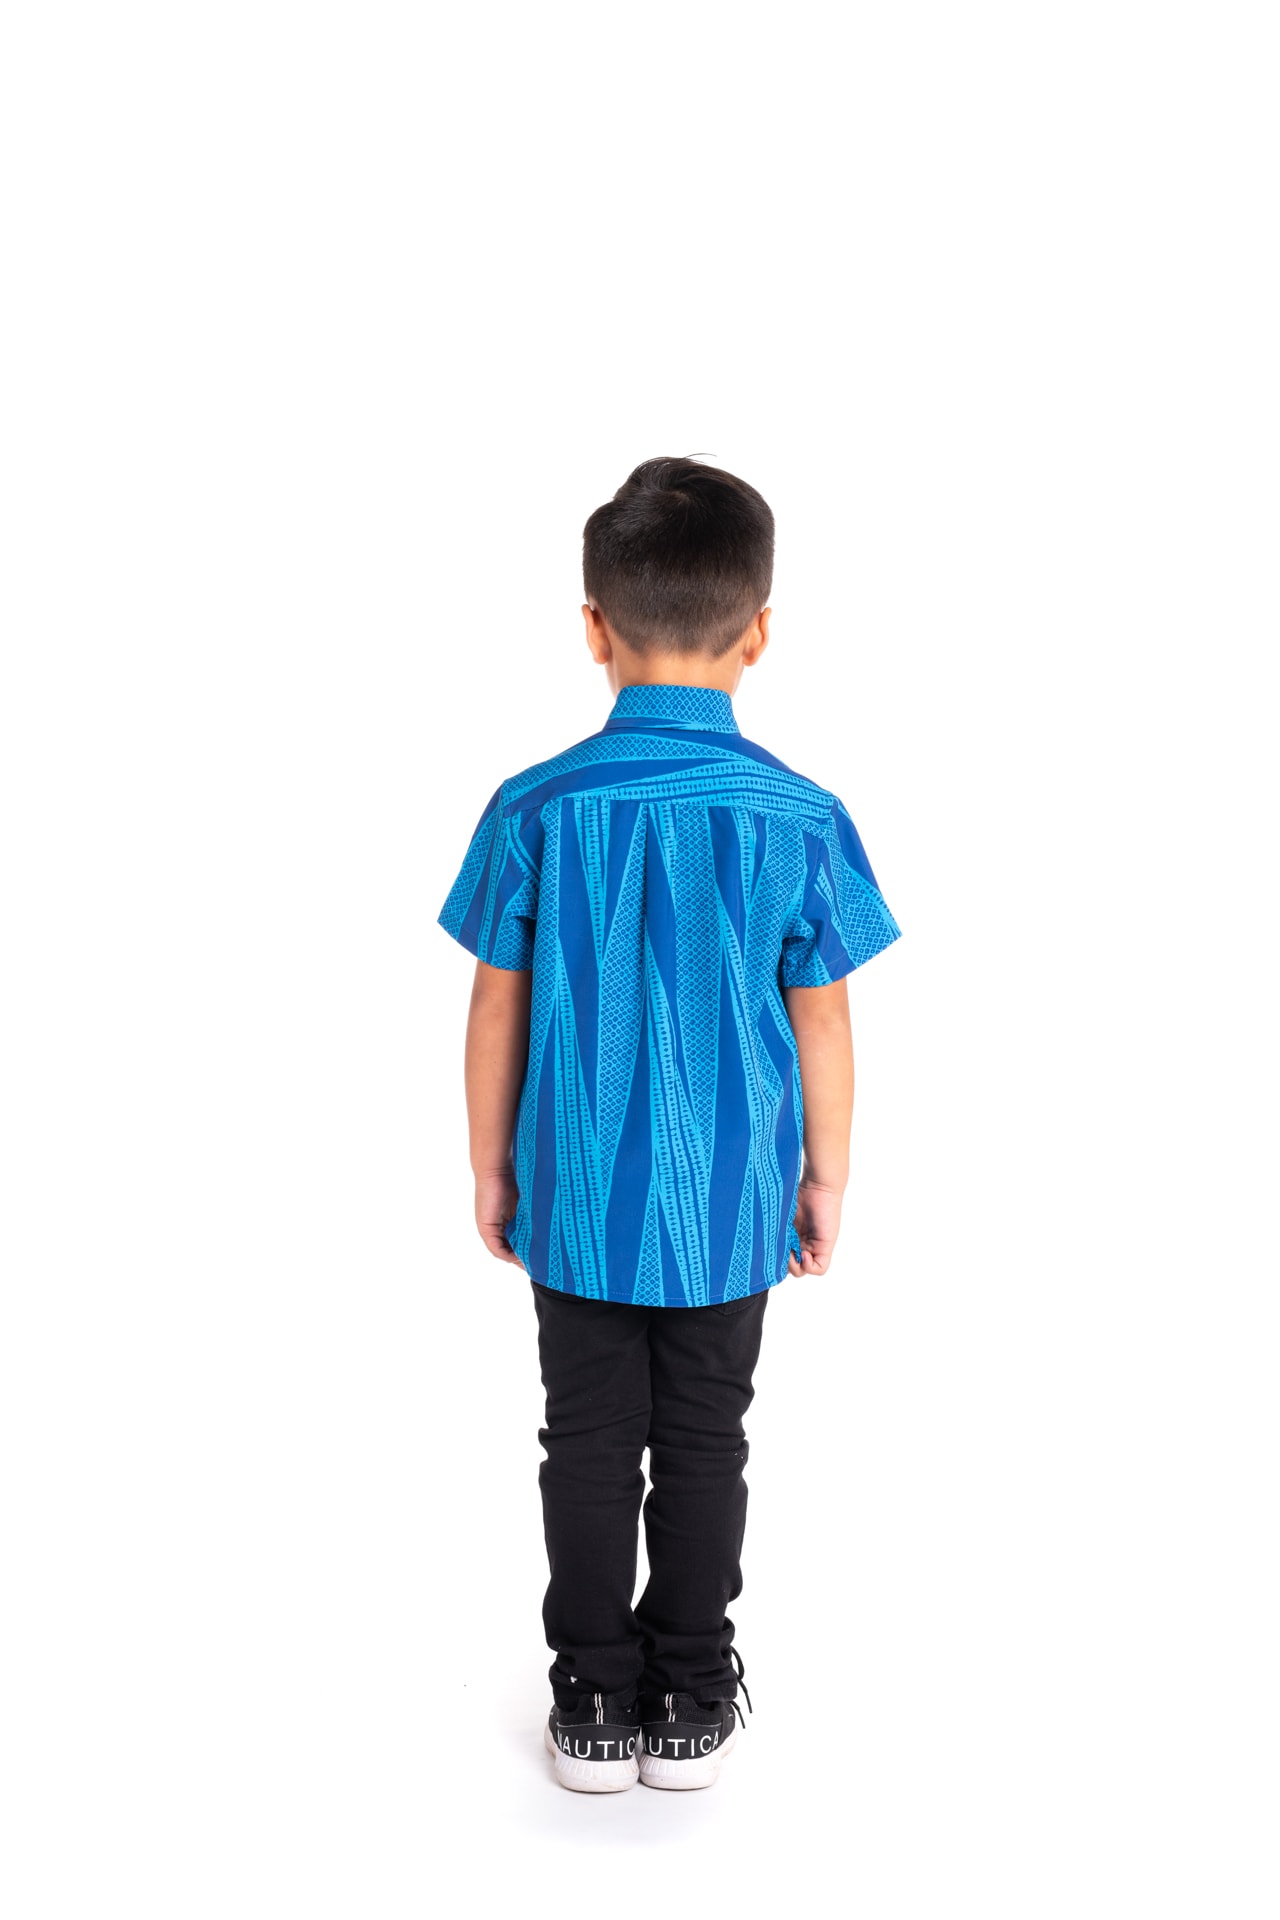 Boy wearing Keiki Mahalo Shirt S-S in Kialoa Blue - Back View